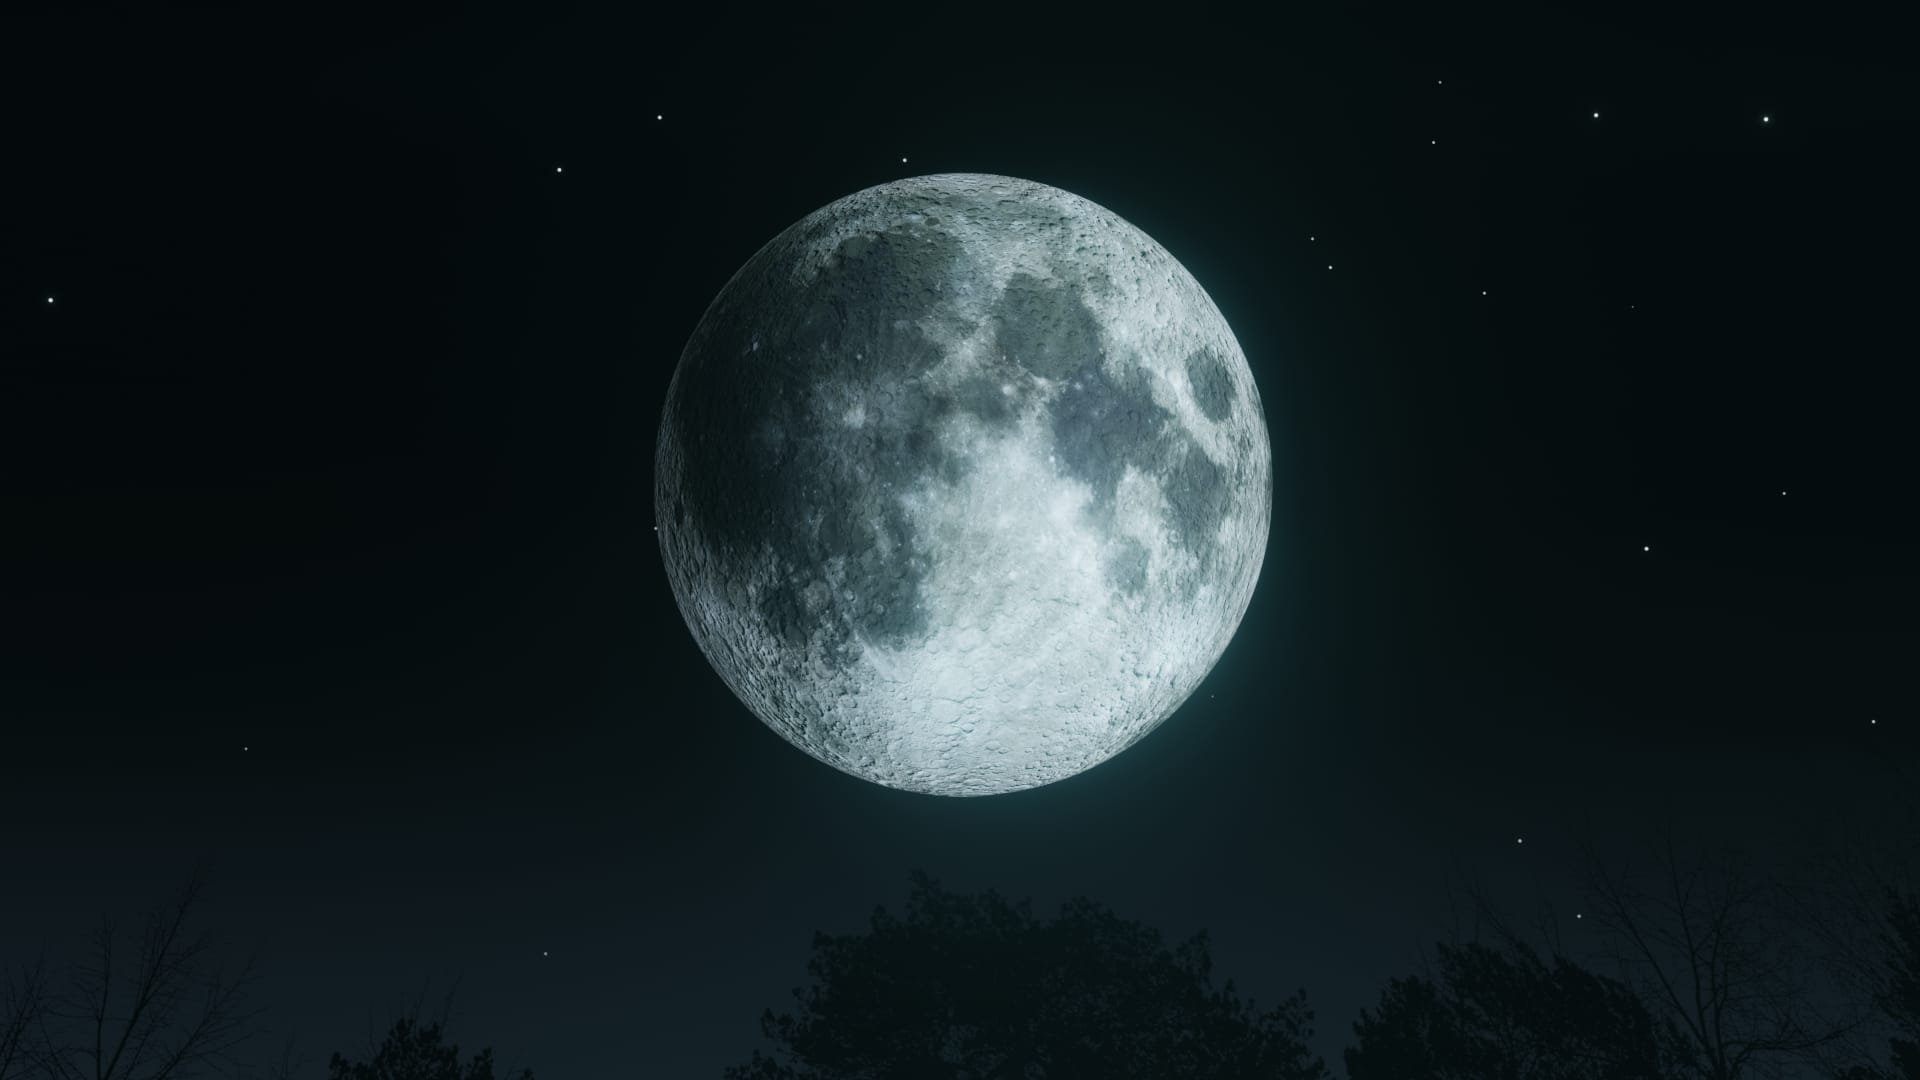 Eclipse lunar penumbral